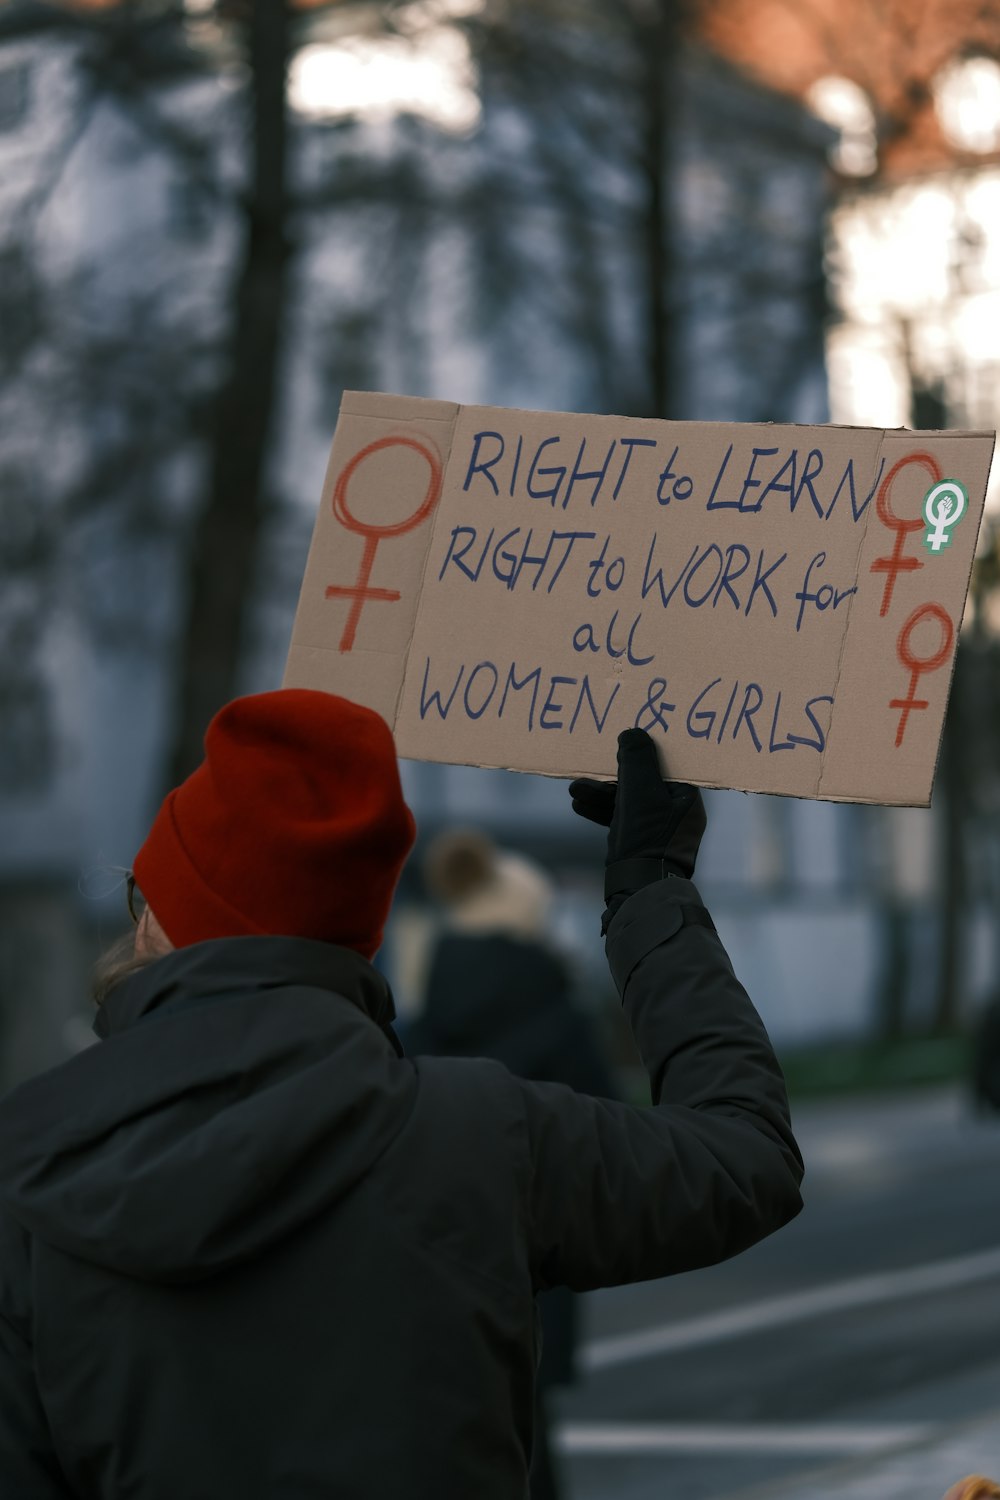 すべての女性を働かせる権利を学ぶ権利を示す看板を持っている人